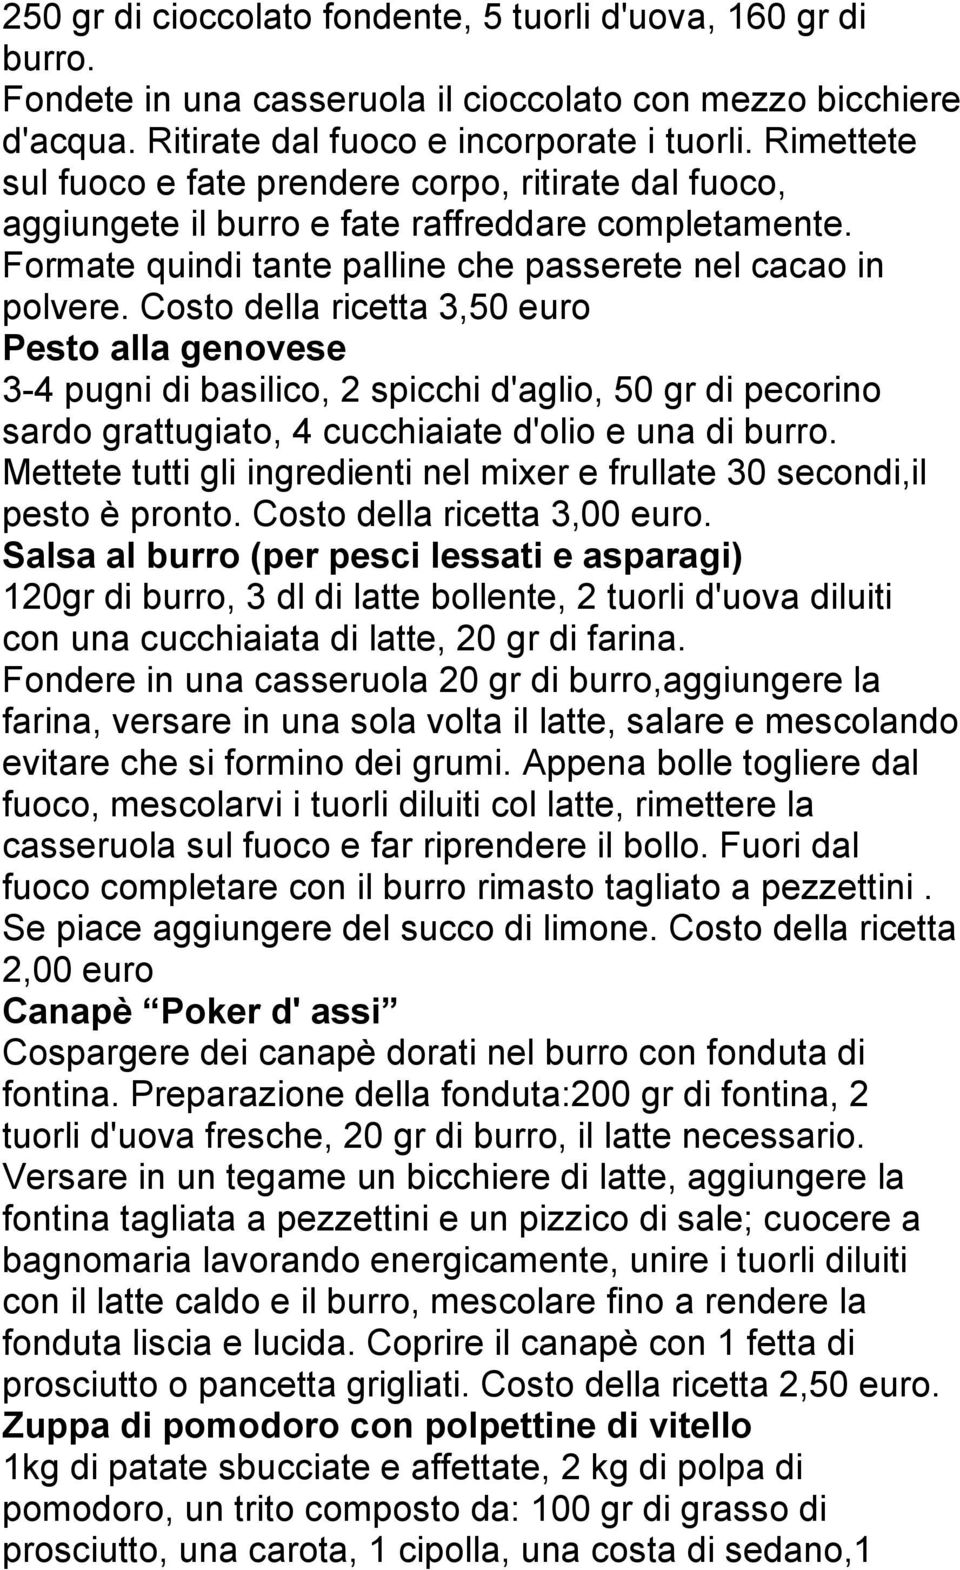 Costo della ricetta 3,50 euro Pesto alla genovese 3-4 pugni di basilico, 2 spicchi d'aglio, 50 gr di pecorino sardo grattugiato, 4 cucchiaiate d'olio e una di burro.